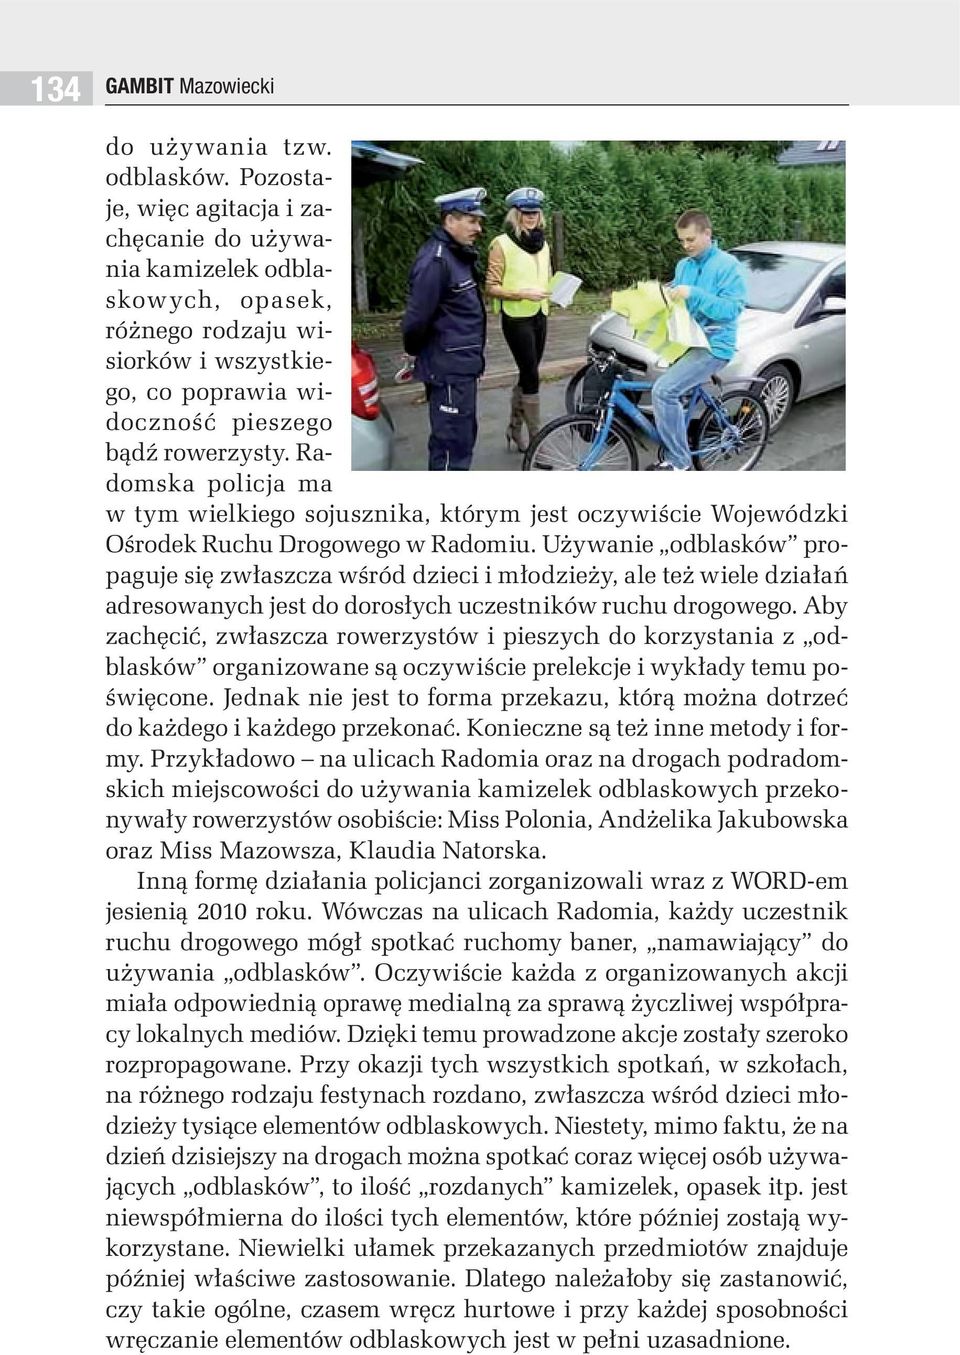 Radomska policja ma w tym wielkiego sojusznika, którym jest oczywiście Wojewódzki Ośrodek Ruchu Drogowego w Radomiu.